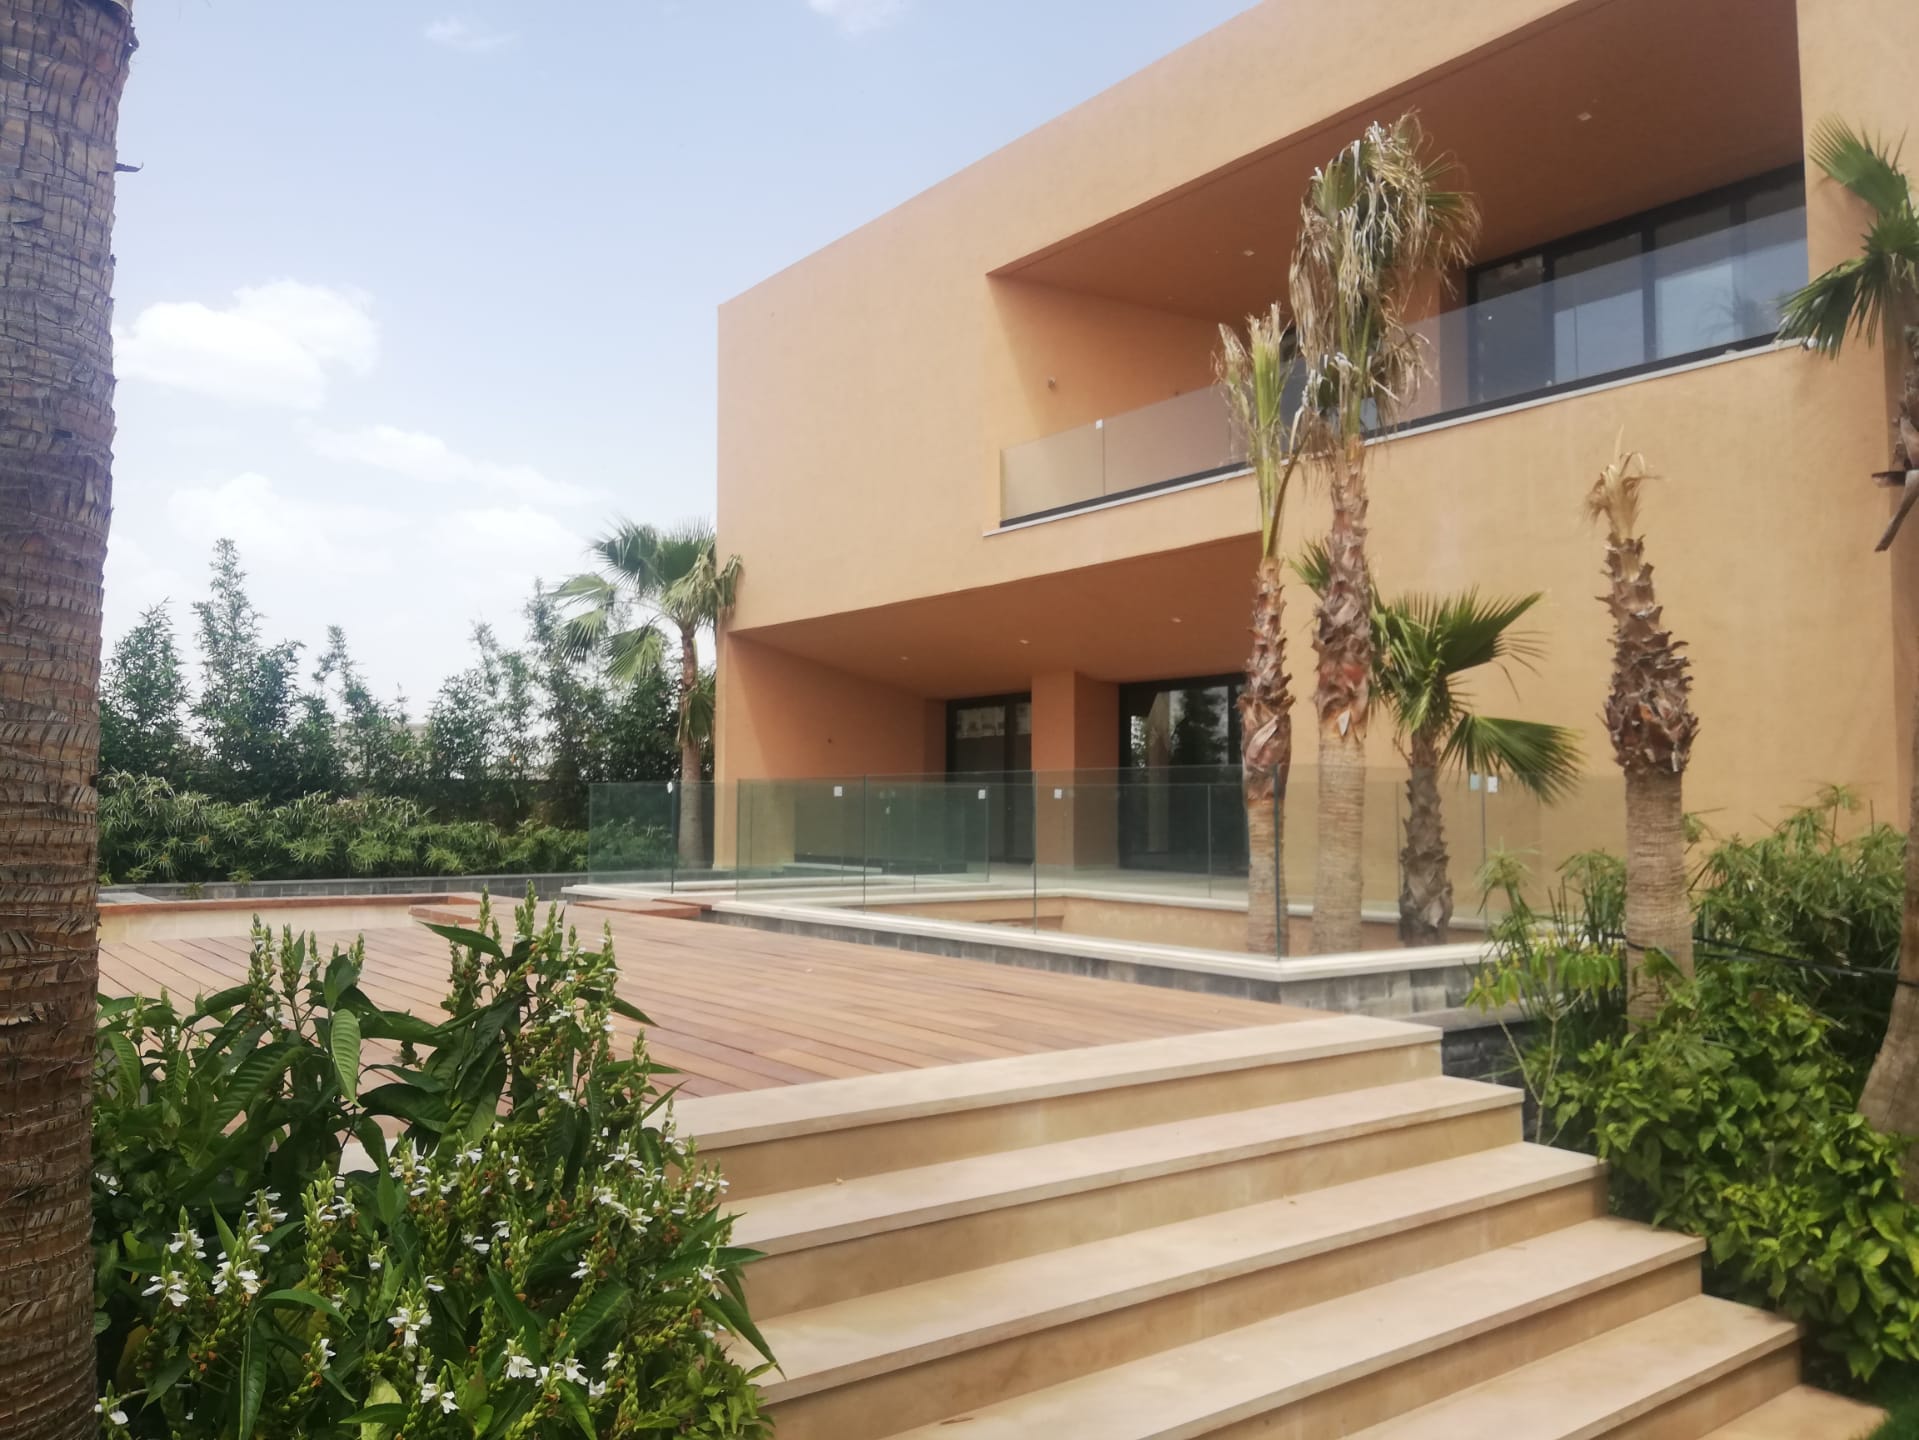 Villa B, Targa, Marrakech, by ISOMAROC